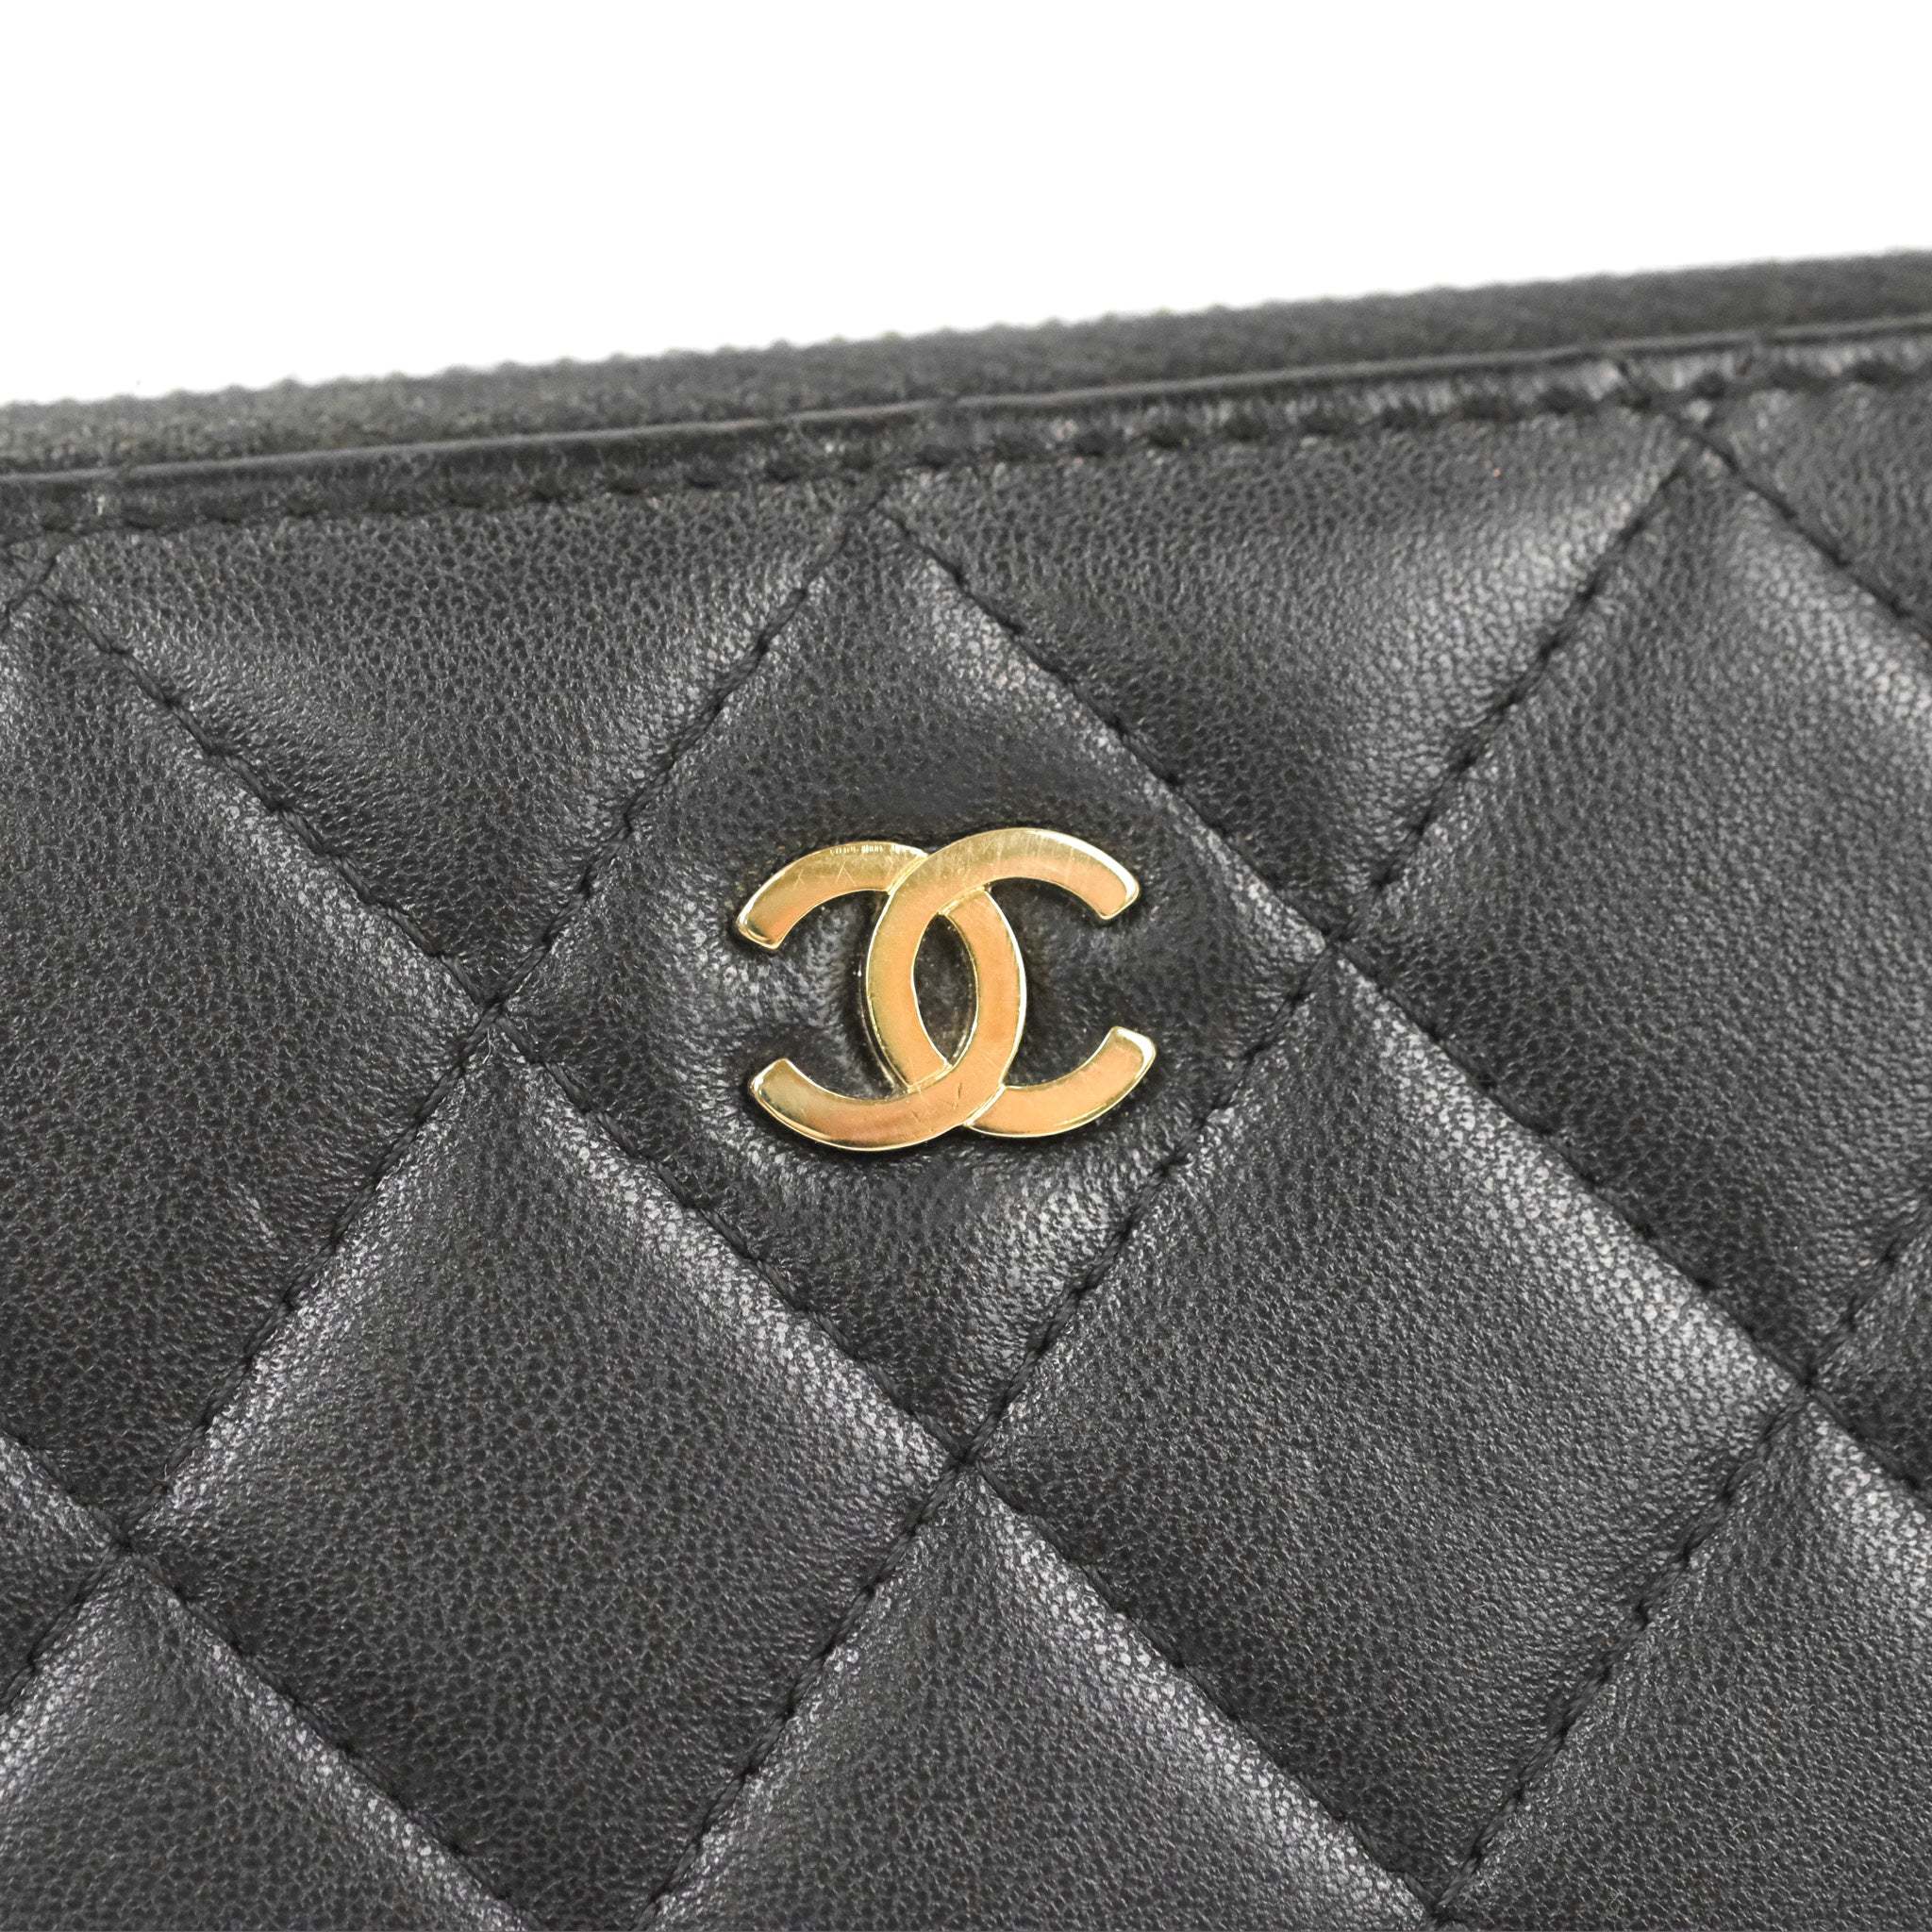 Chanel Zip Around Organiser Wallet Black Lambskin Gold Hardware